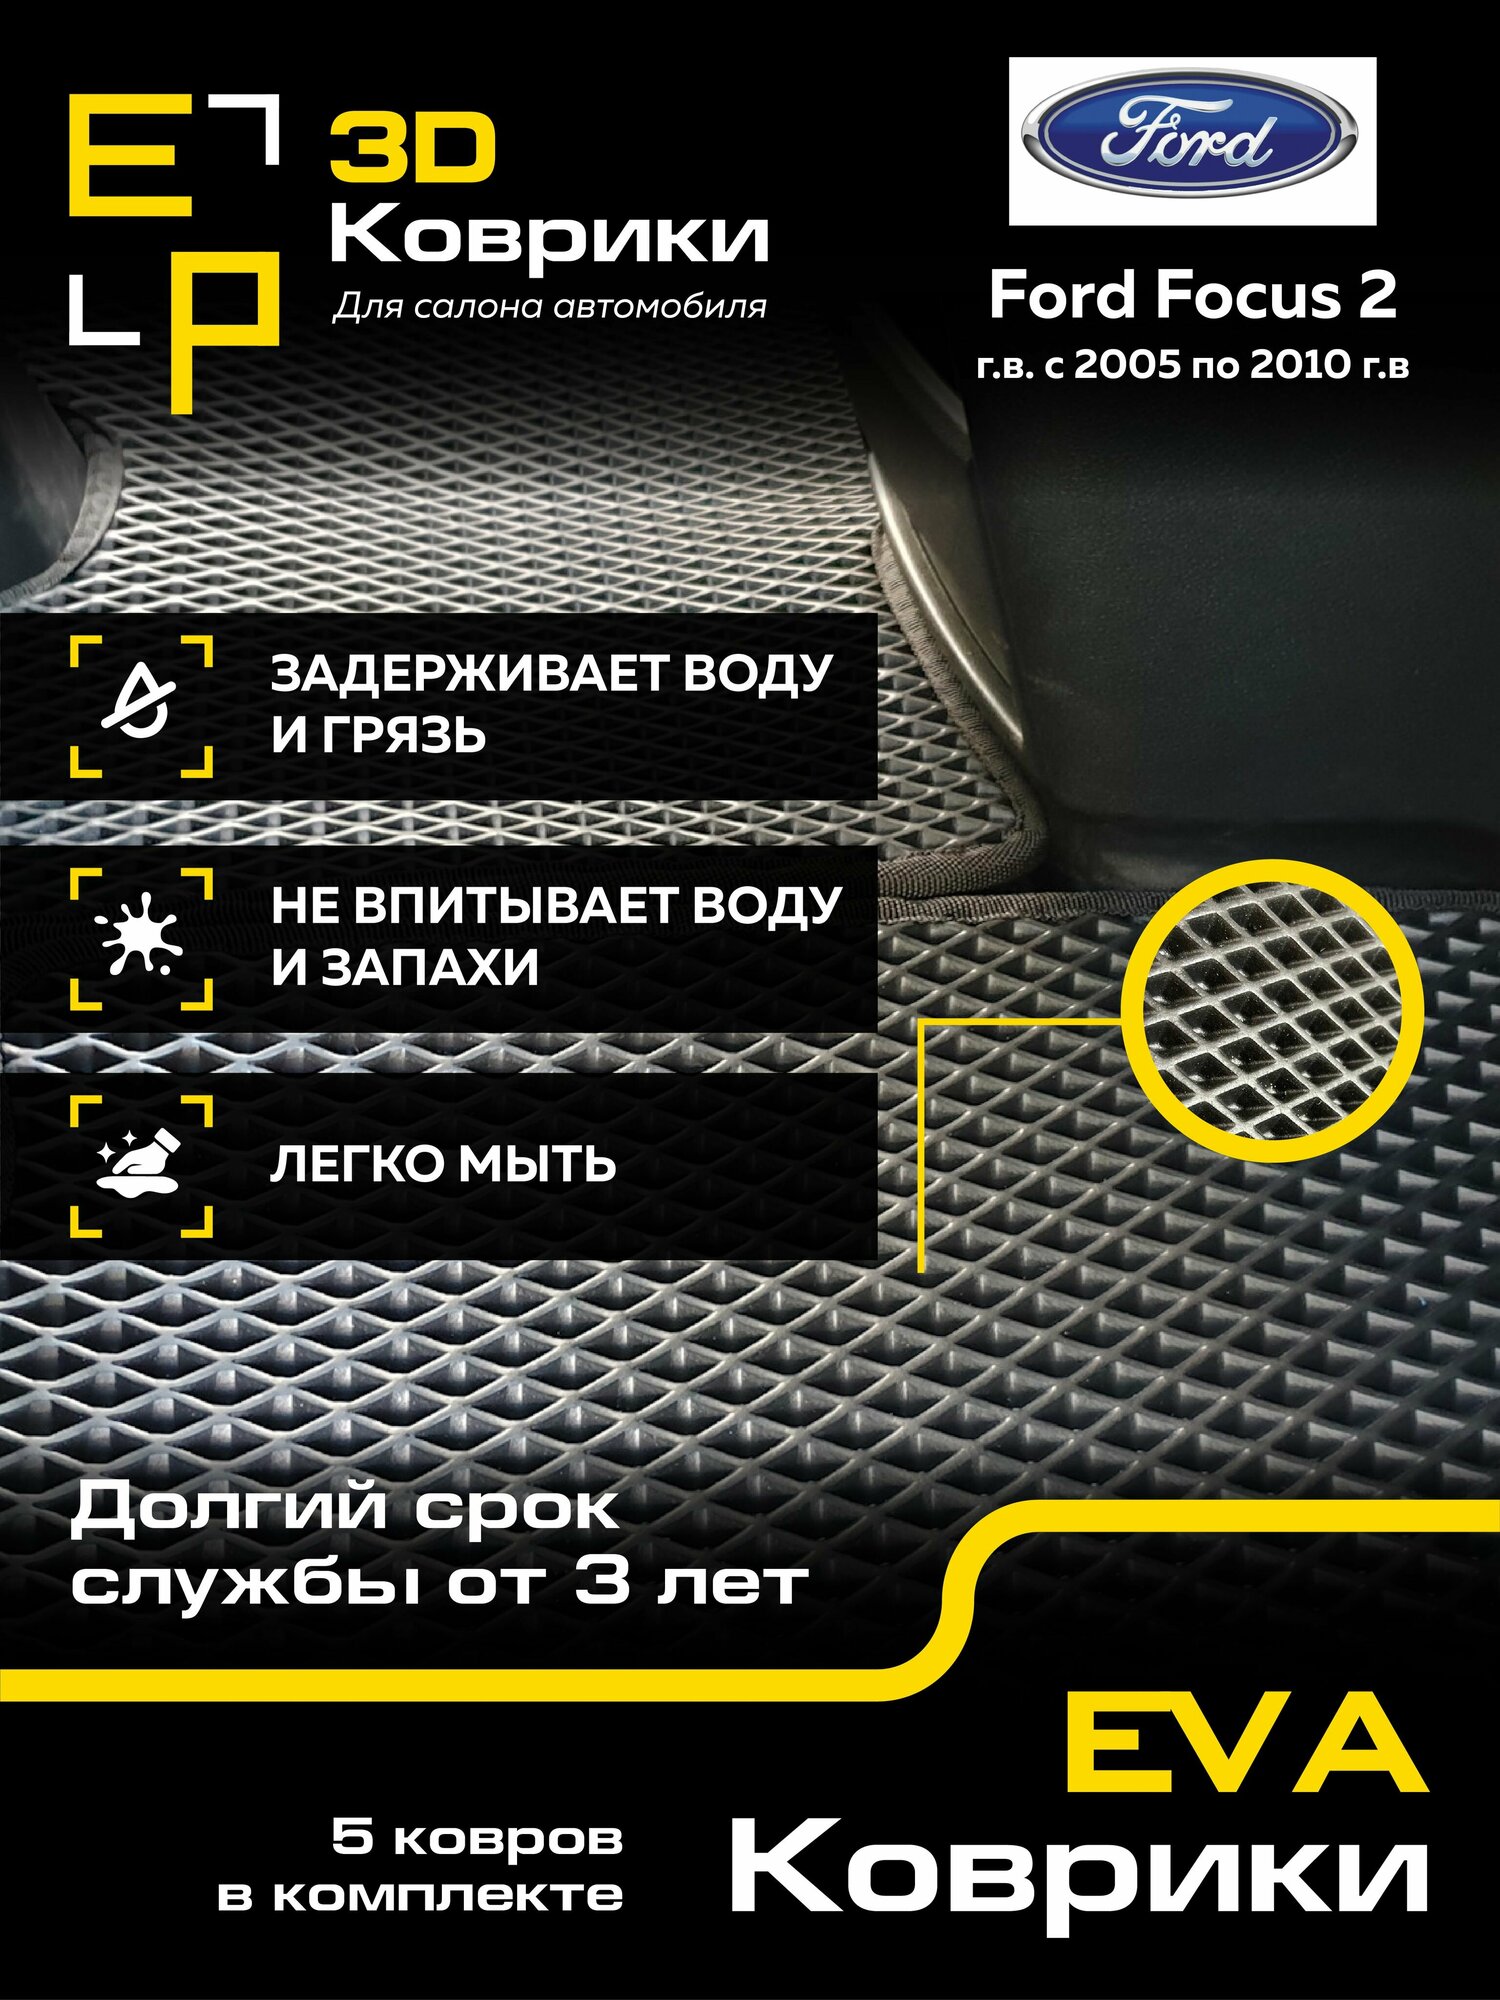 Коврики в машину Ford Focus 2 3D с черным кантом